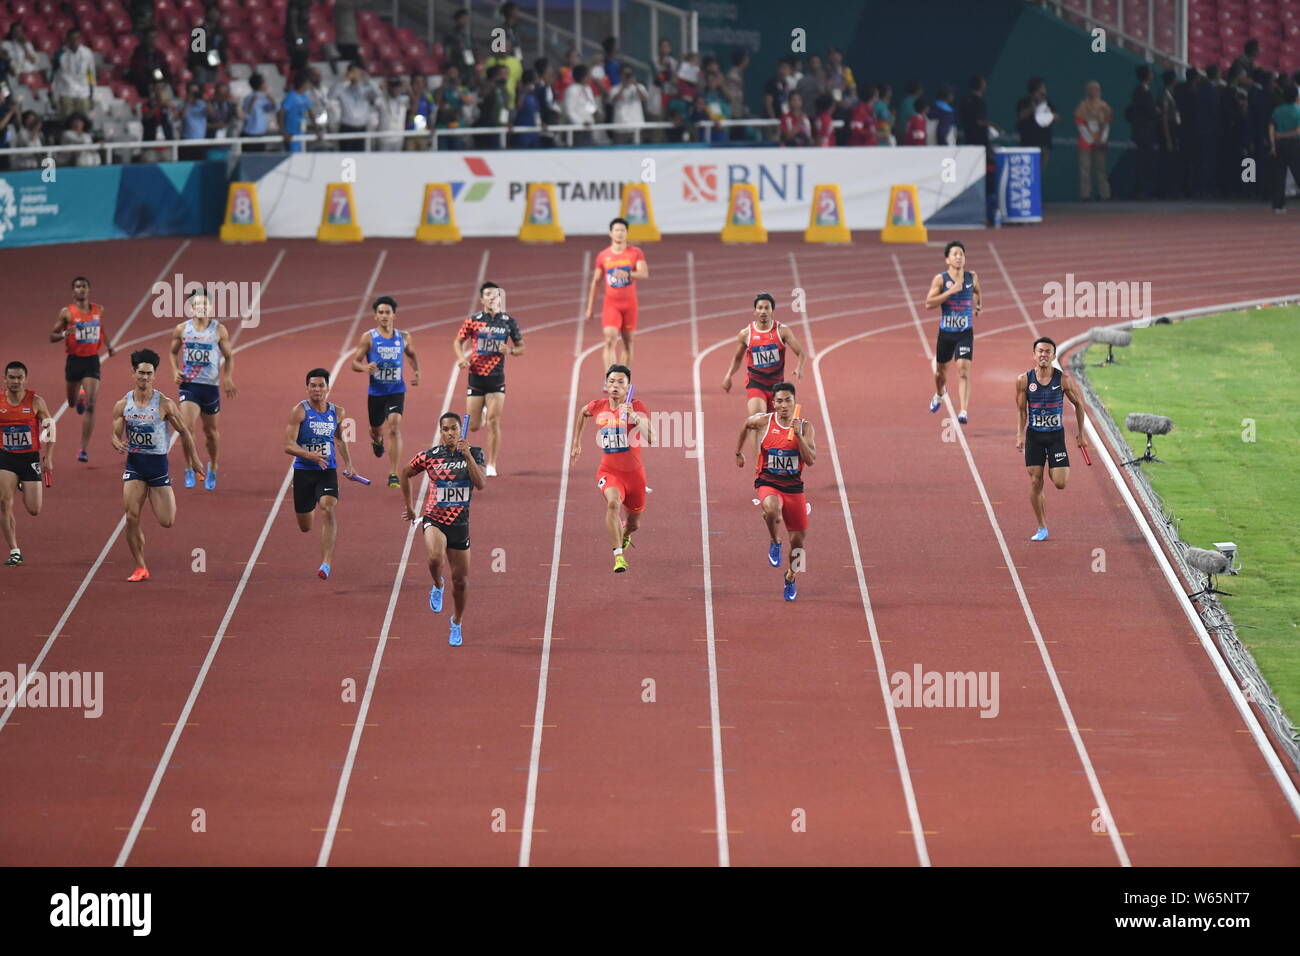 Asaka Cambridge von Japan, Front, und andere Spieler konkurrieren in der Männer 4 x 100 m Staffel finale der Leichtathletik Wettbewerb während die 2018 bei den asiatischen Spielen, o Stockfoto